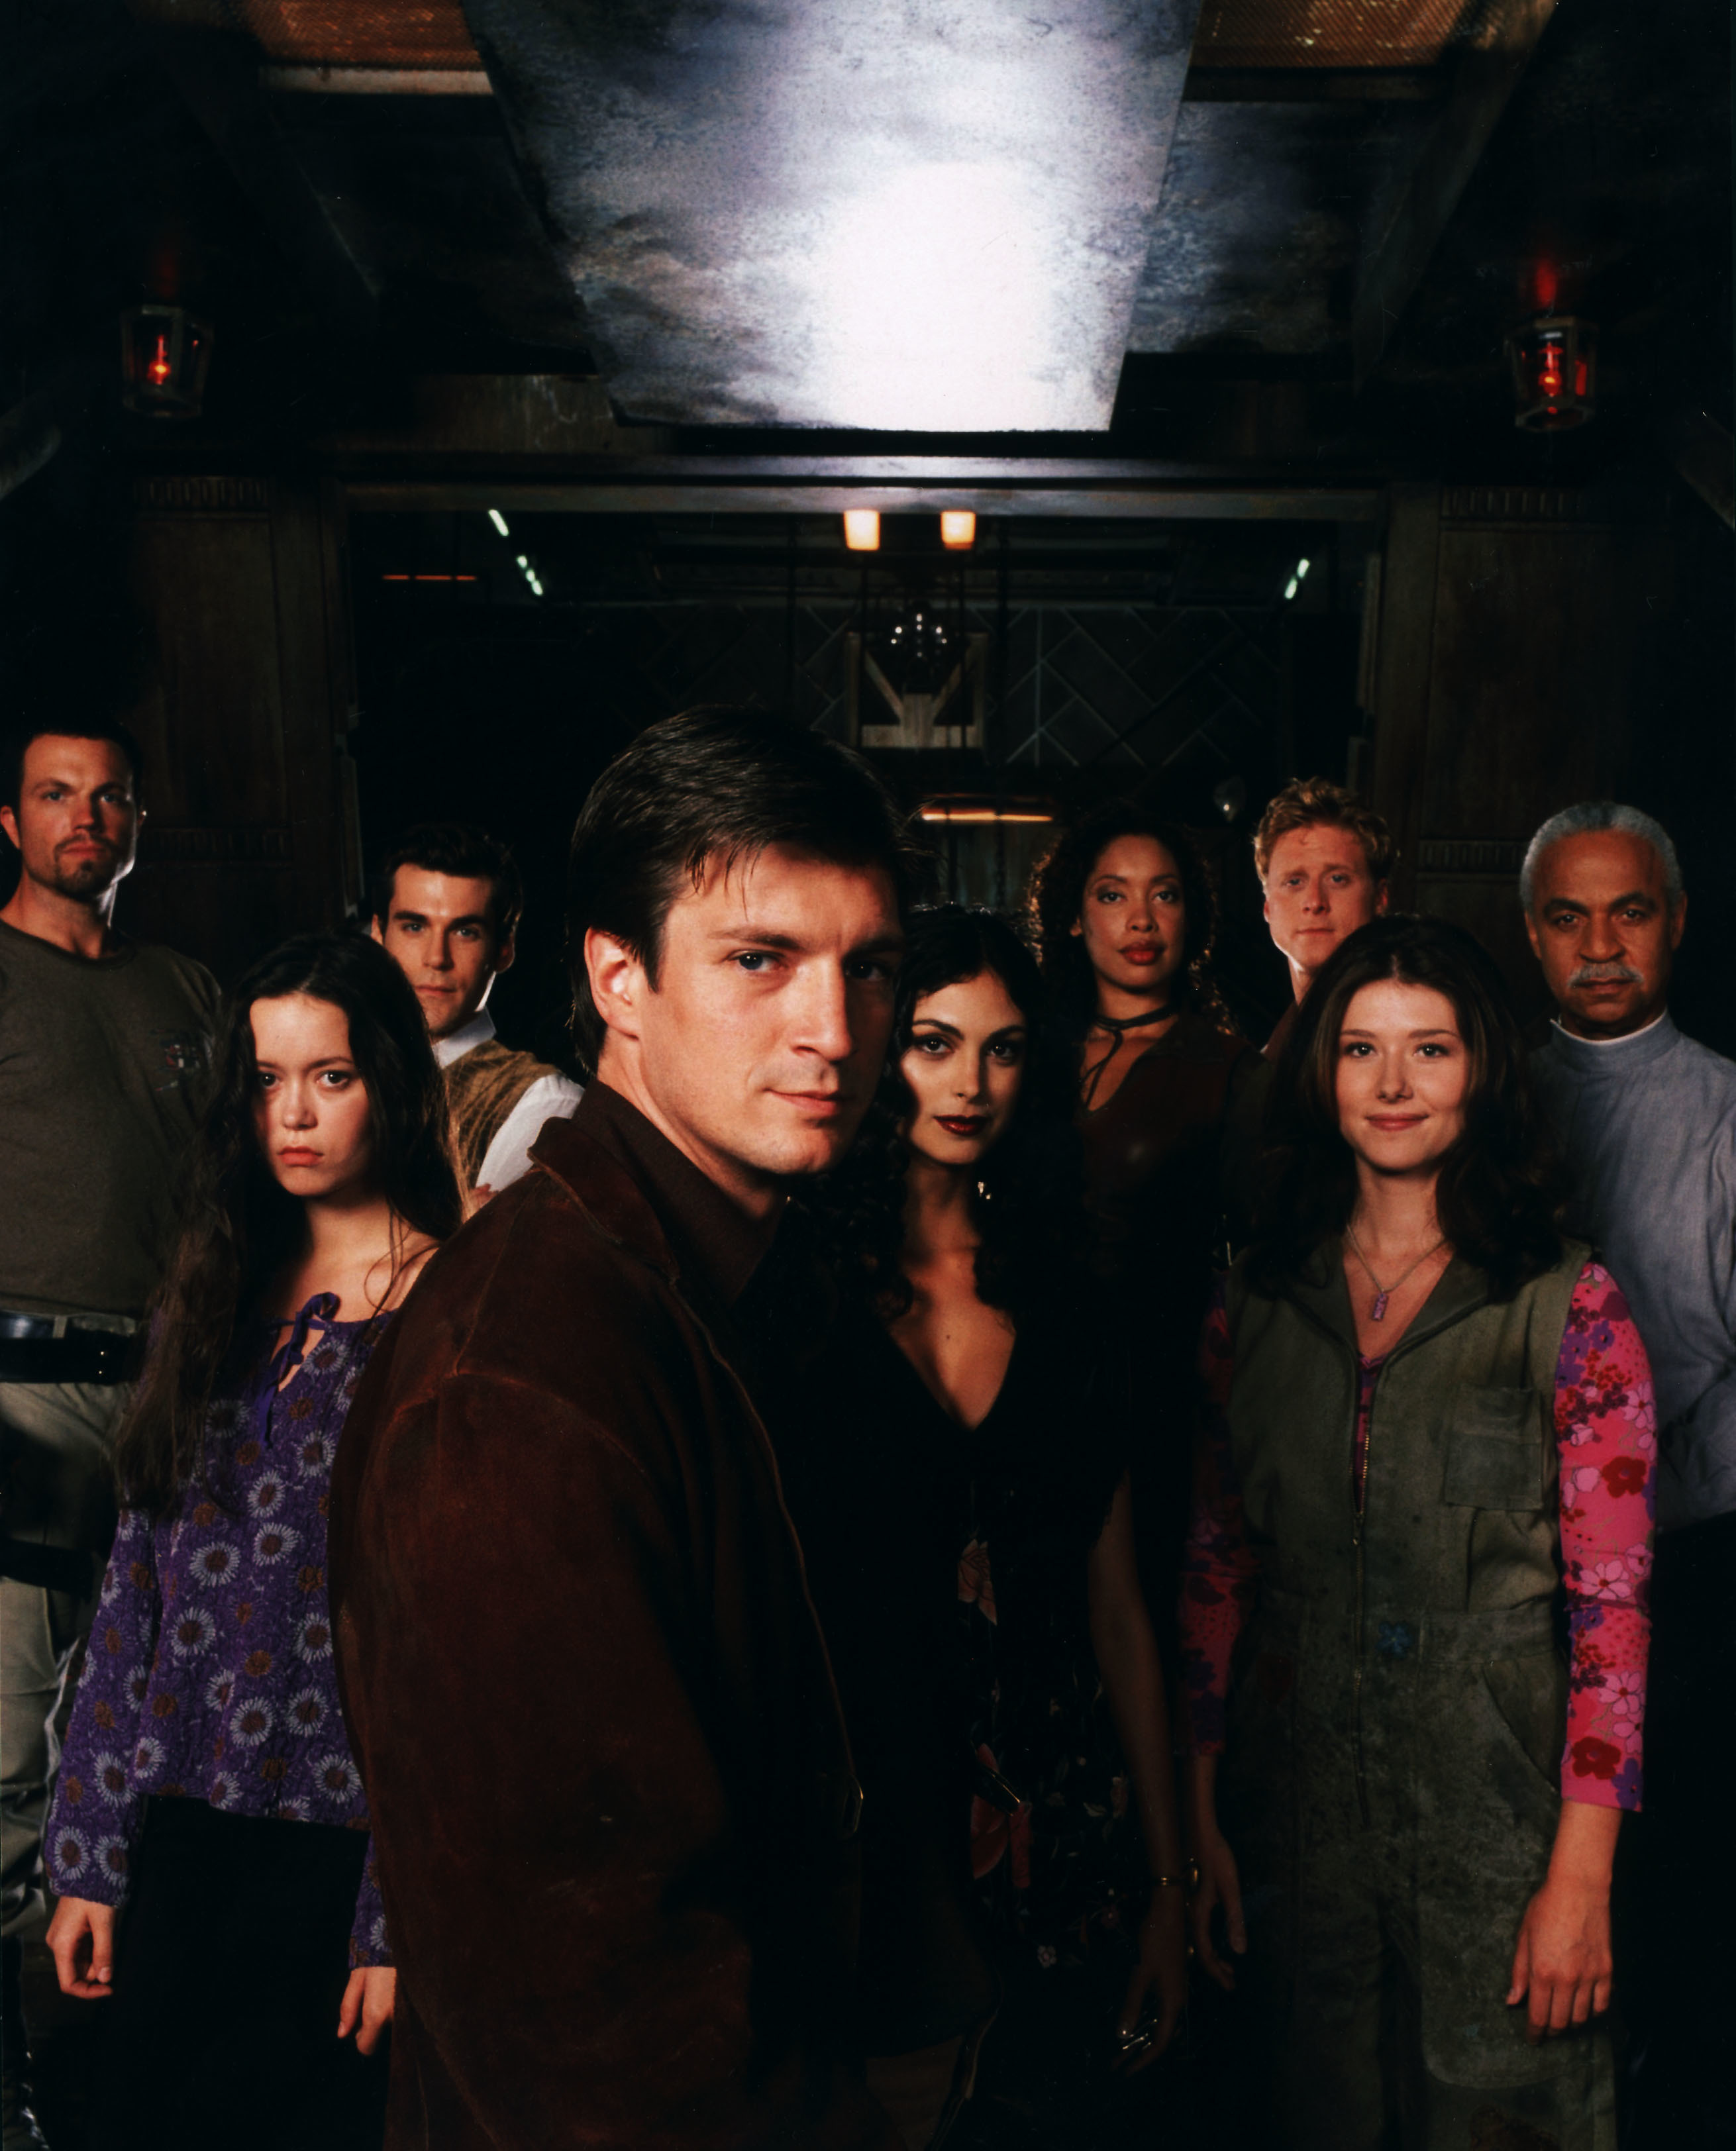 Firefly, movie, 2002